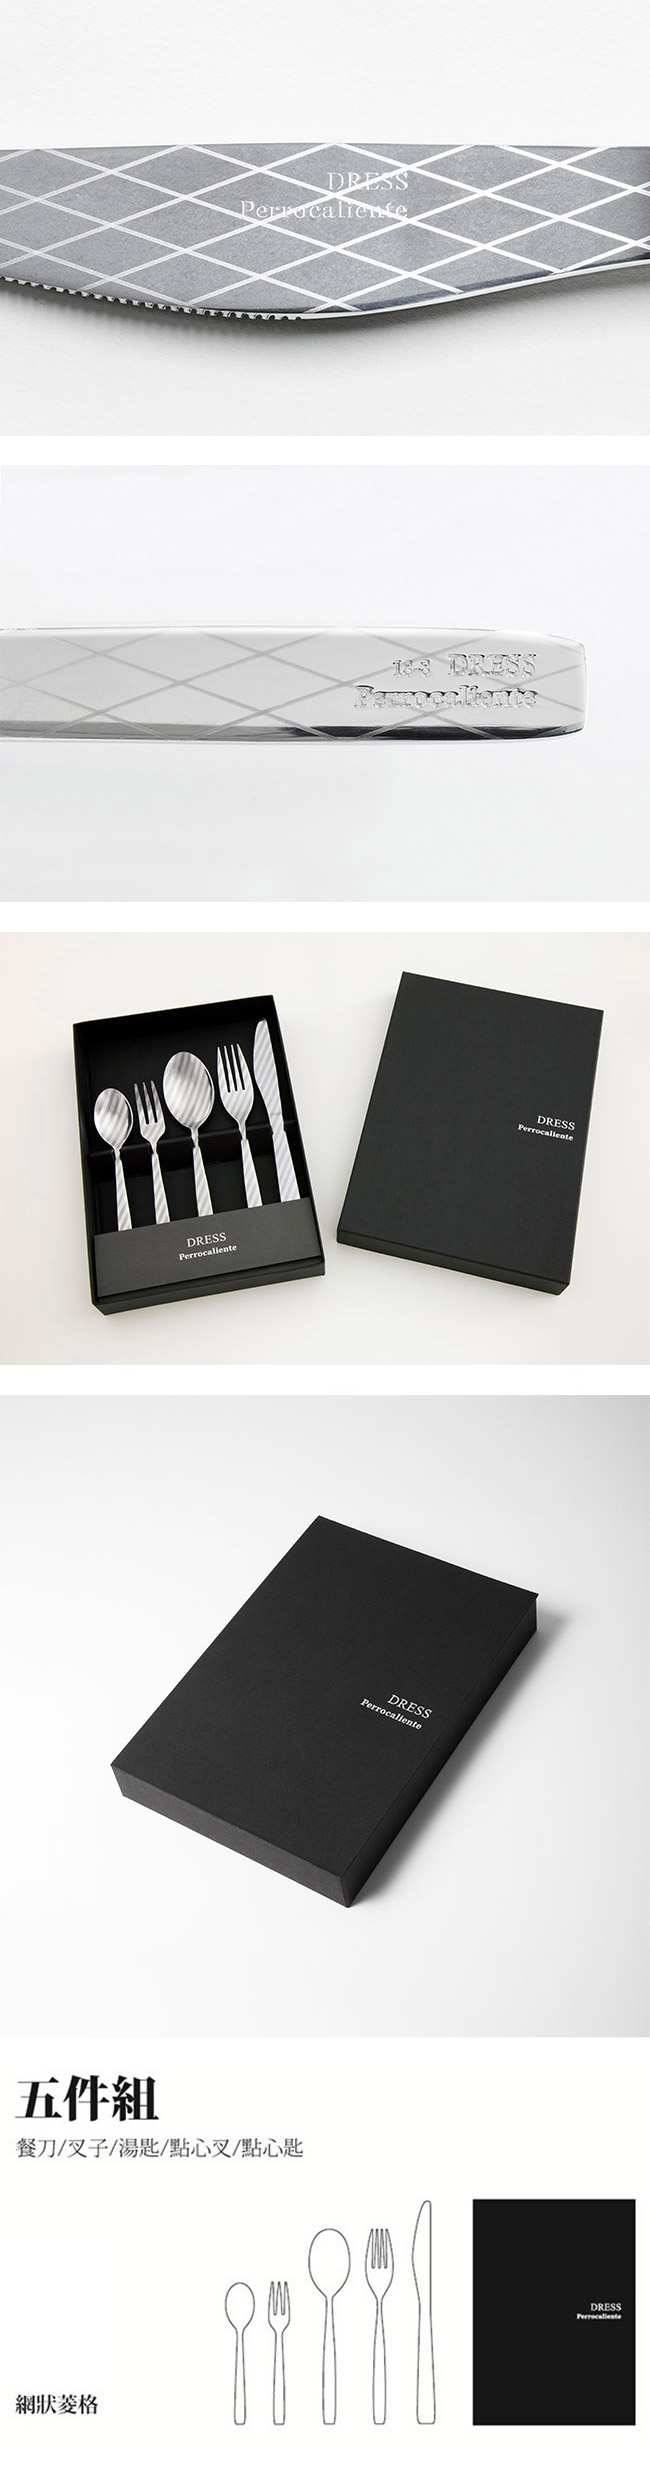 【4/30~5/6精選品牌9折優惠】Perrocaliente Dress Gift Set 銀色盒裝餐具組 五件組 網狀菱格